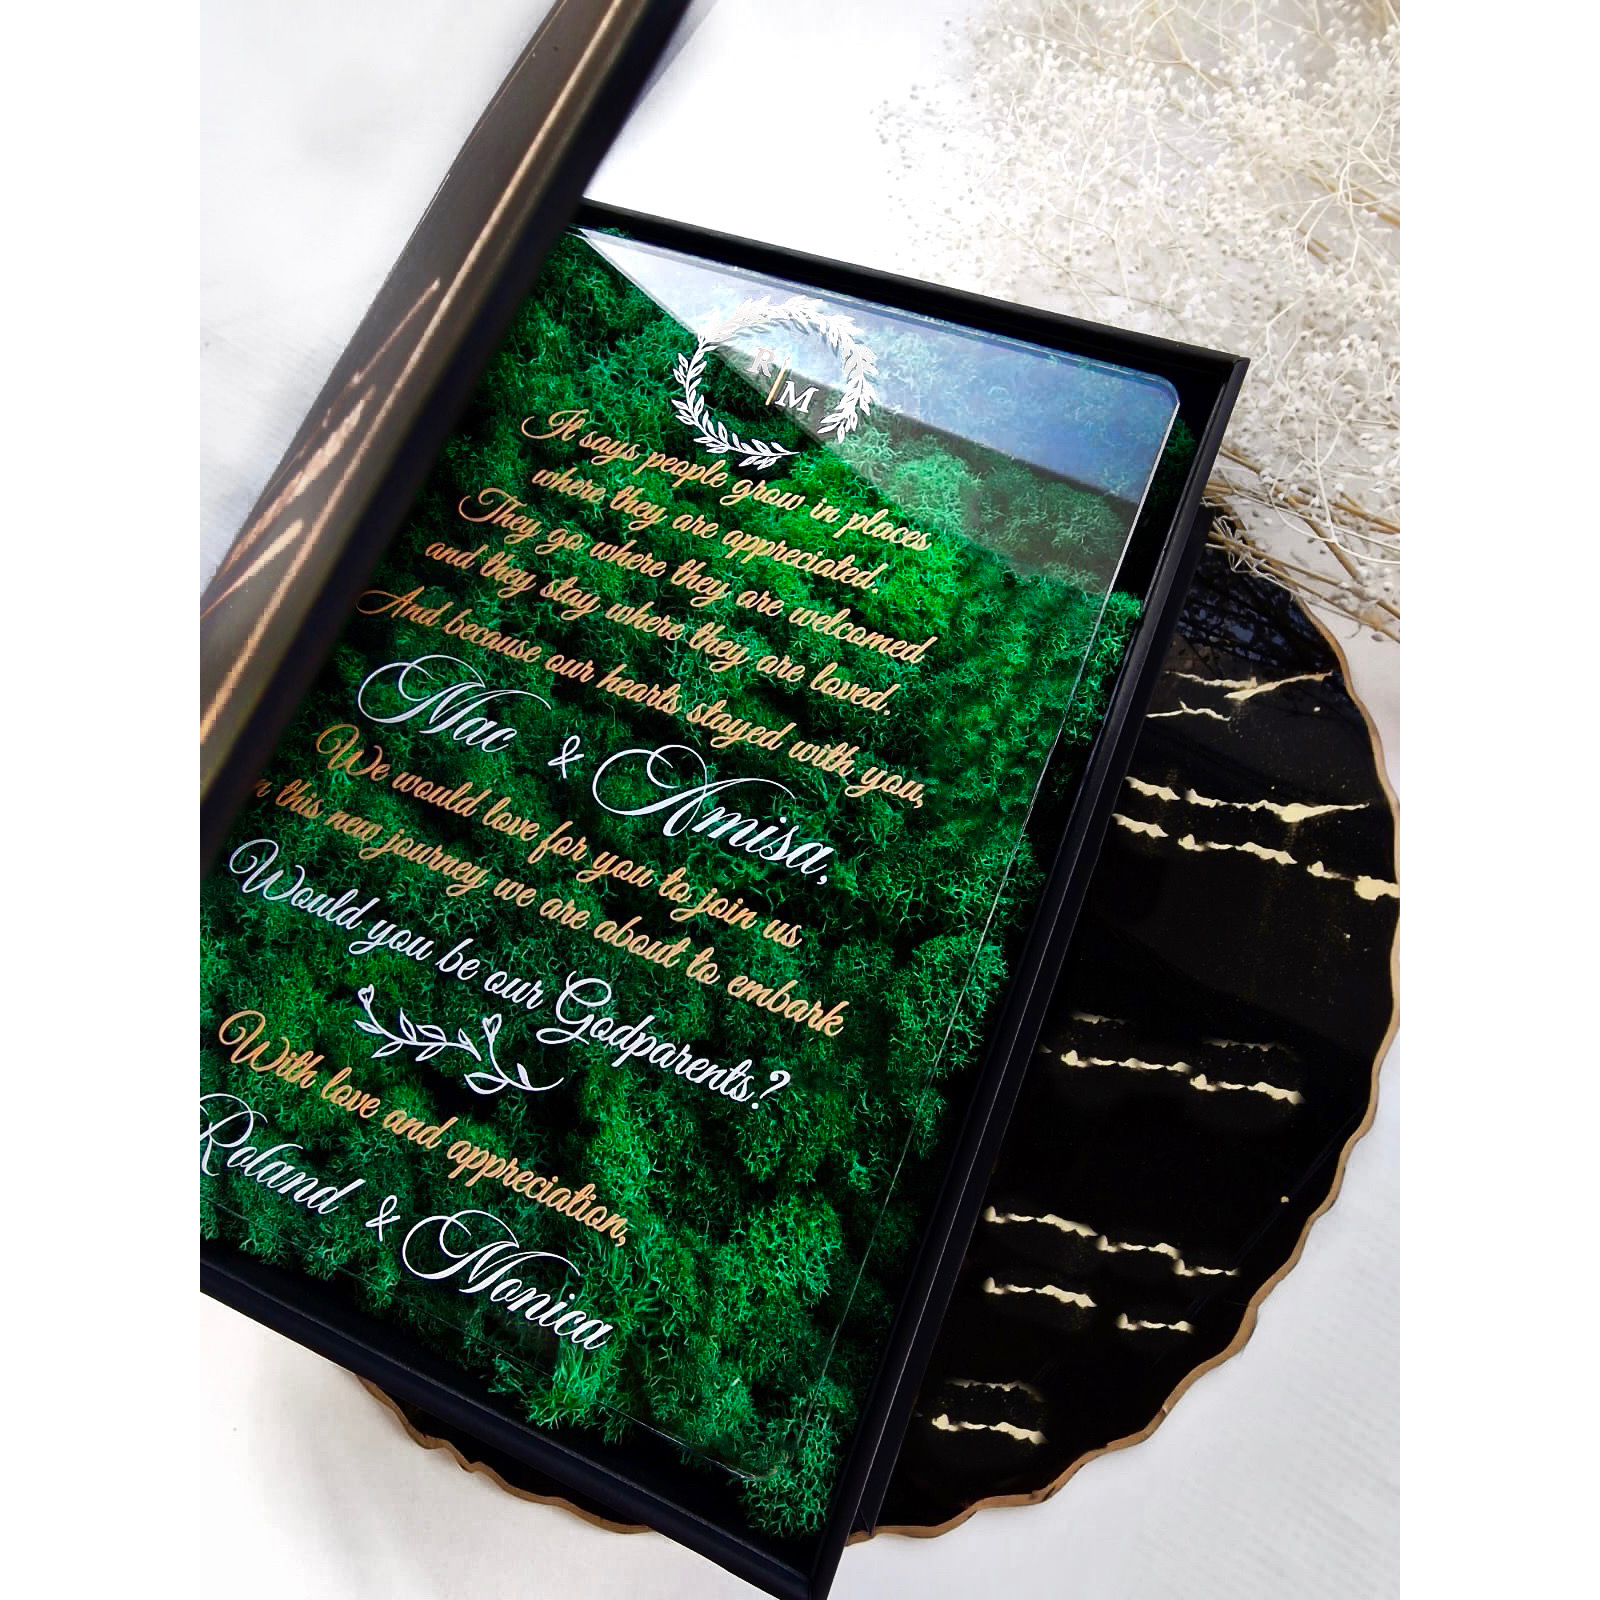 Cutie cadou pentru nasi tip carte cu mesaj in engleza ” Would you be our godparents?“